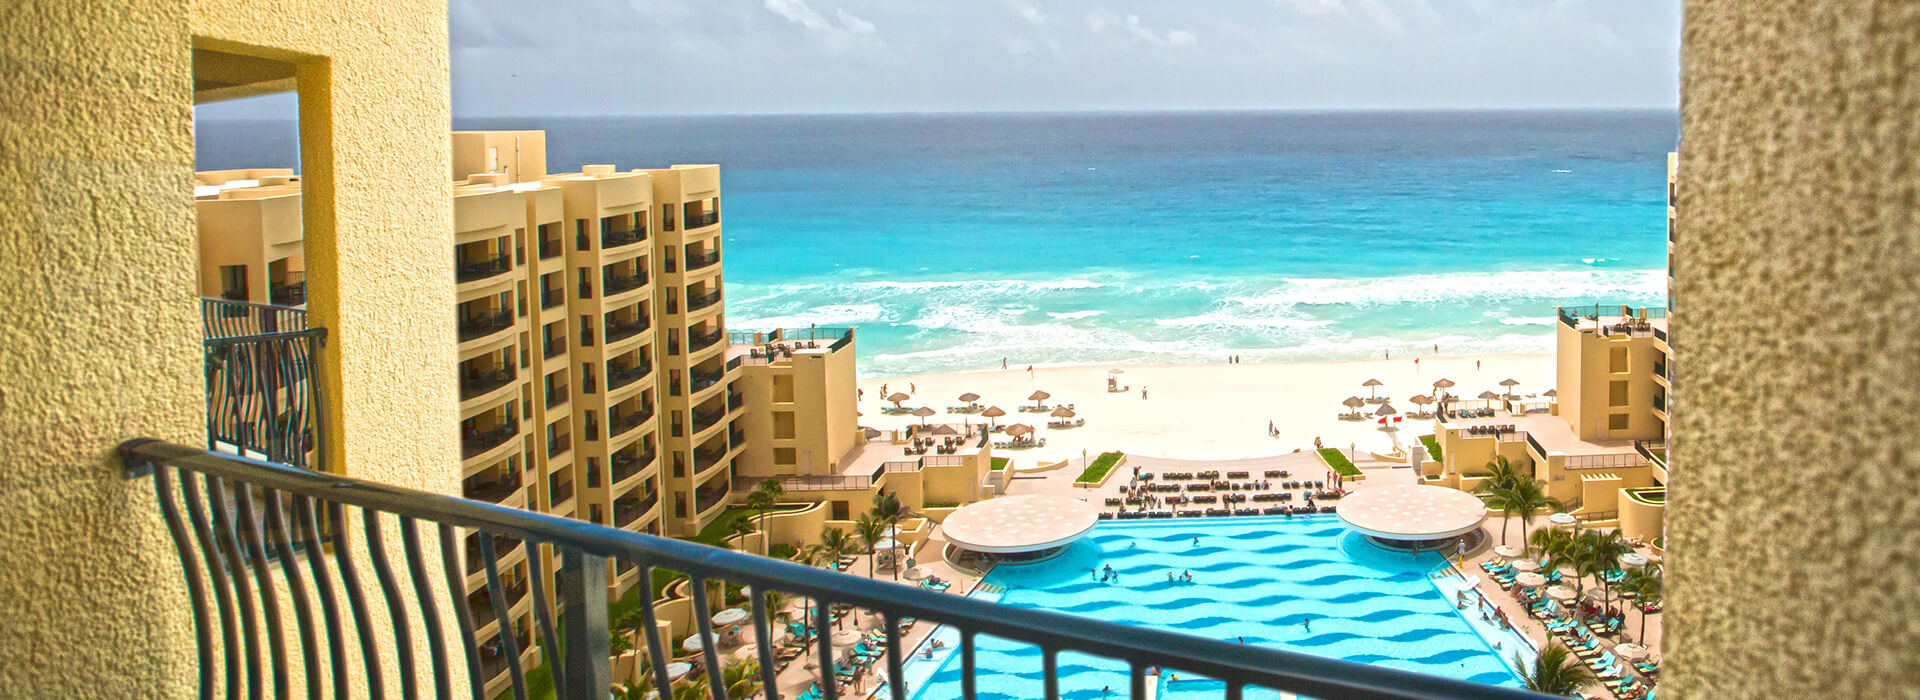 Junior suite con vista al mar y balcón privado donde disfrutarás impresionantes vistas del Mar